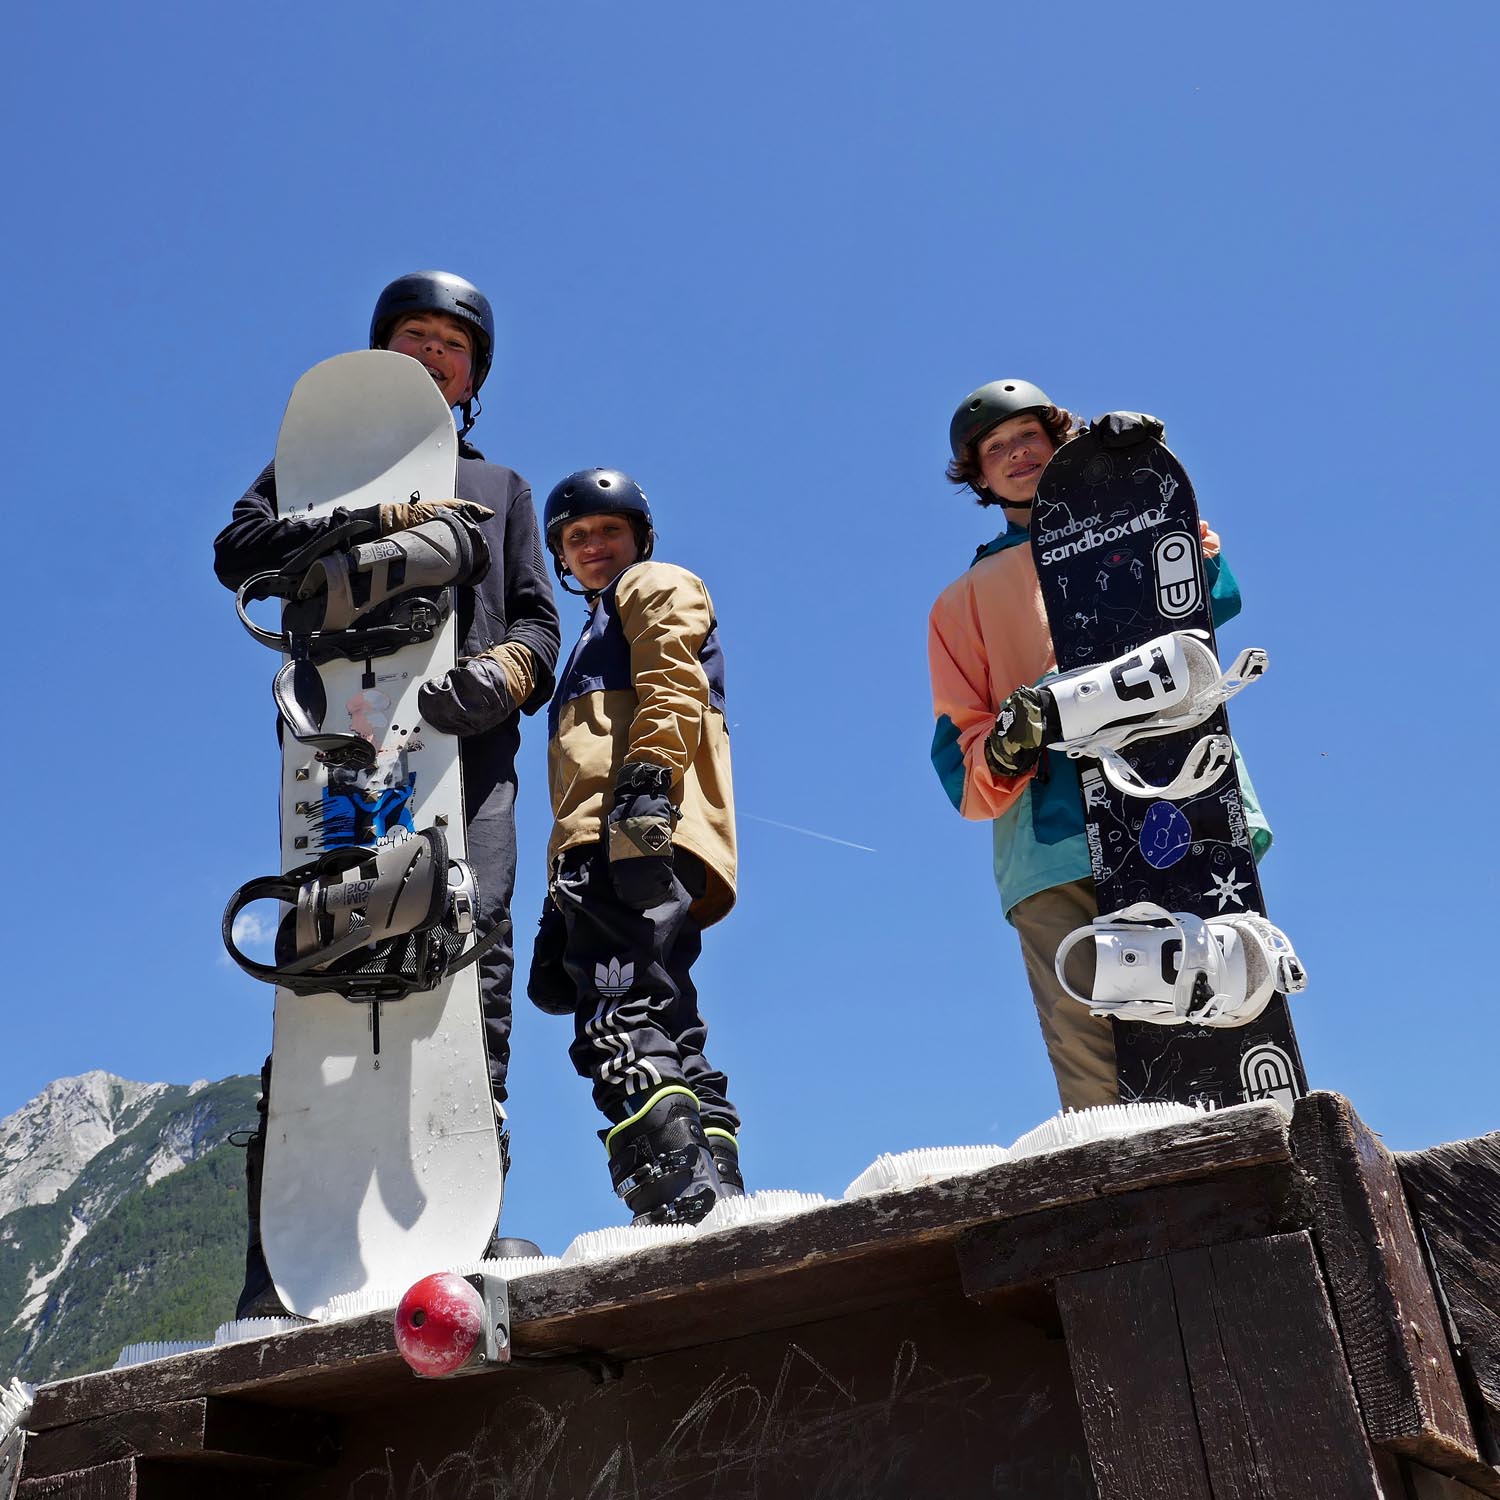 Trainingscamp in den Sommerferien für jugendliche Parkfahrer. Ski und Snowboard.